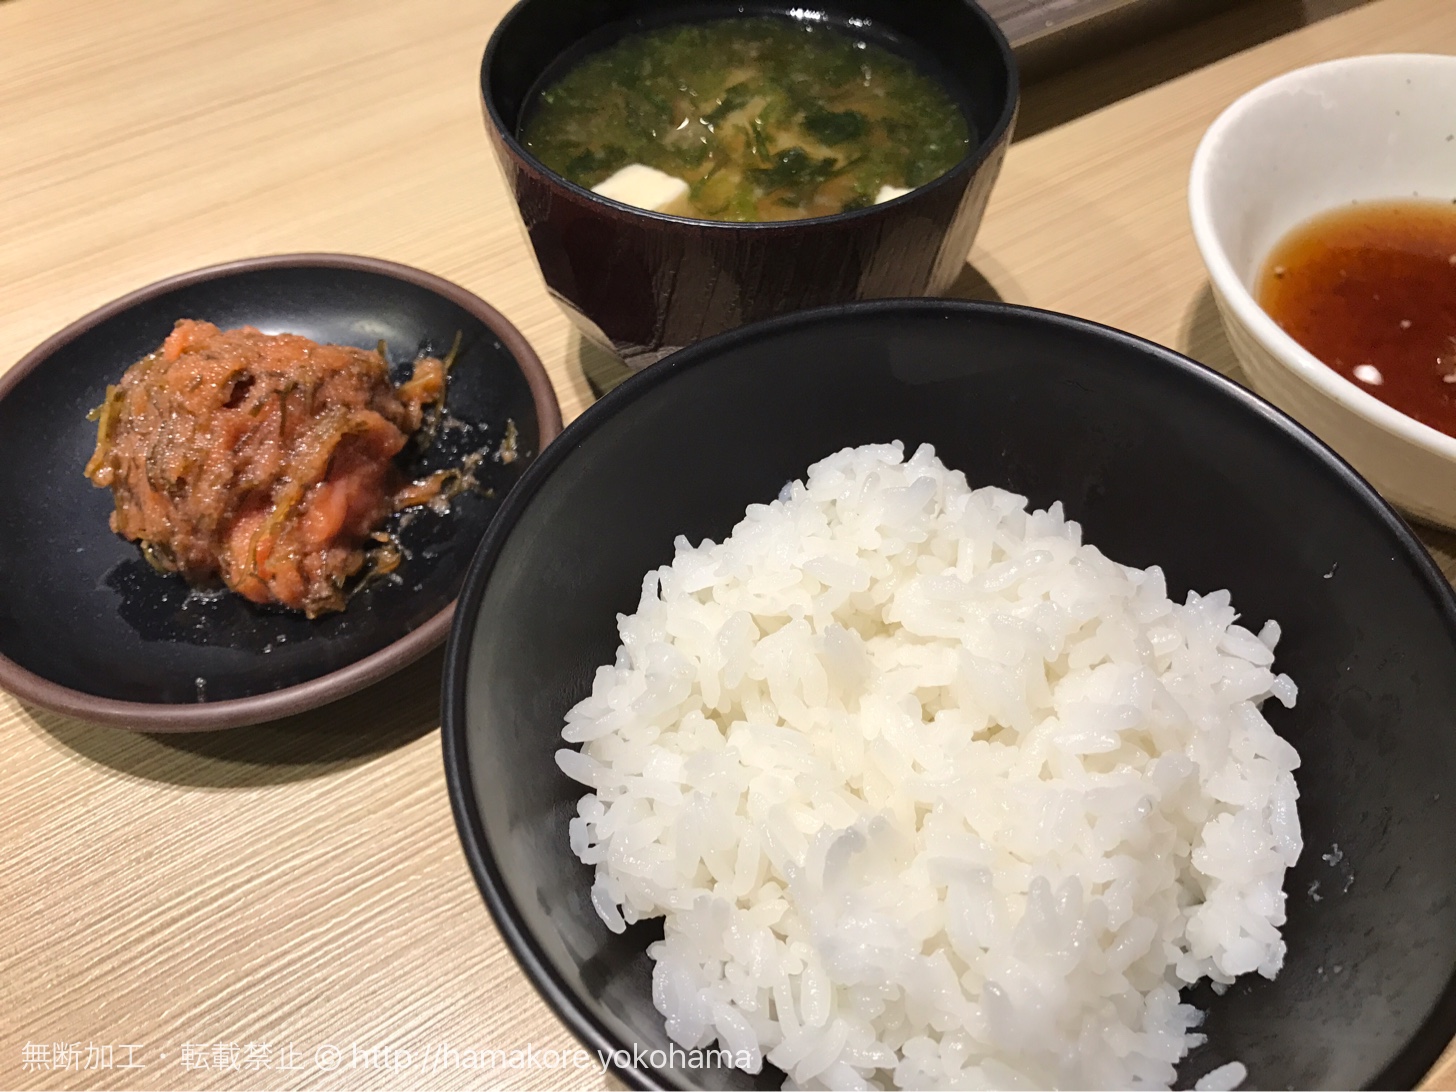 ご飯と味噌汁、天ぷら7種類（豚肉・海老・魚介2種・野菜3種）の入った「たかお定食」